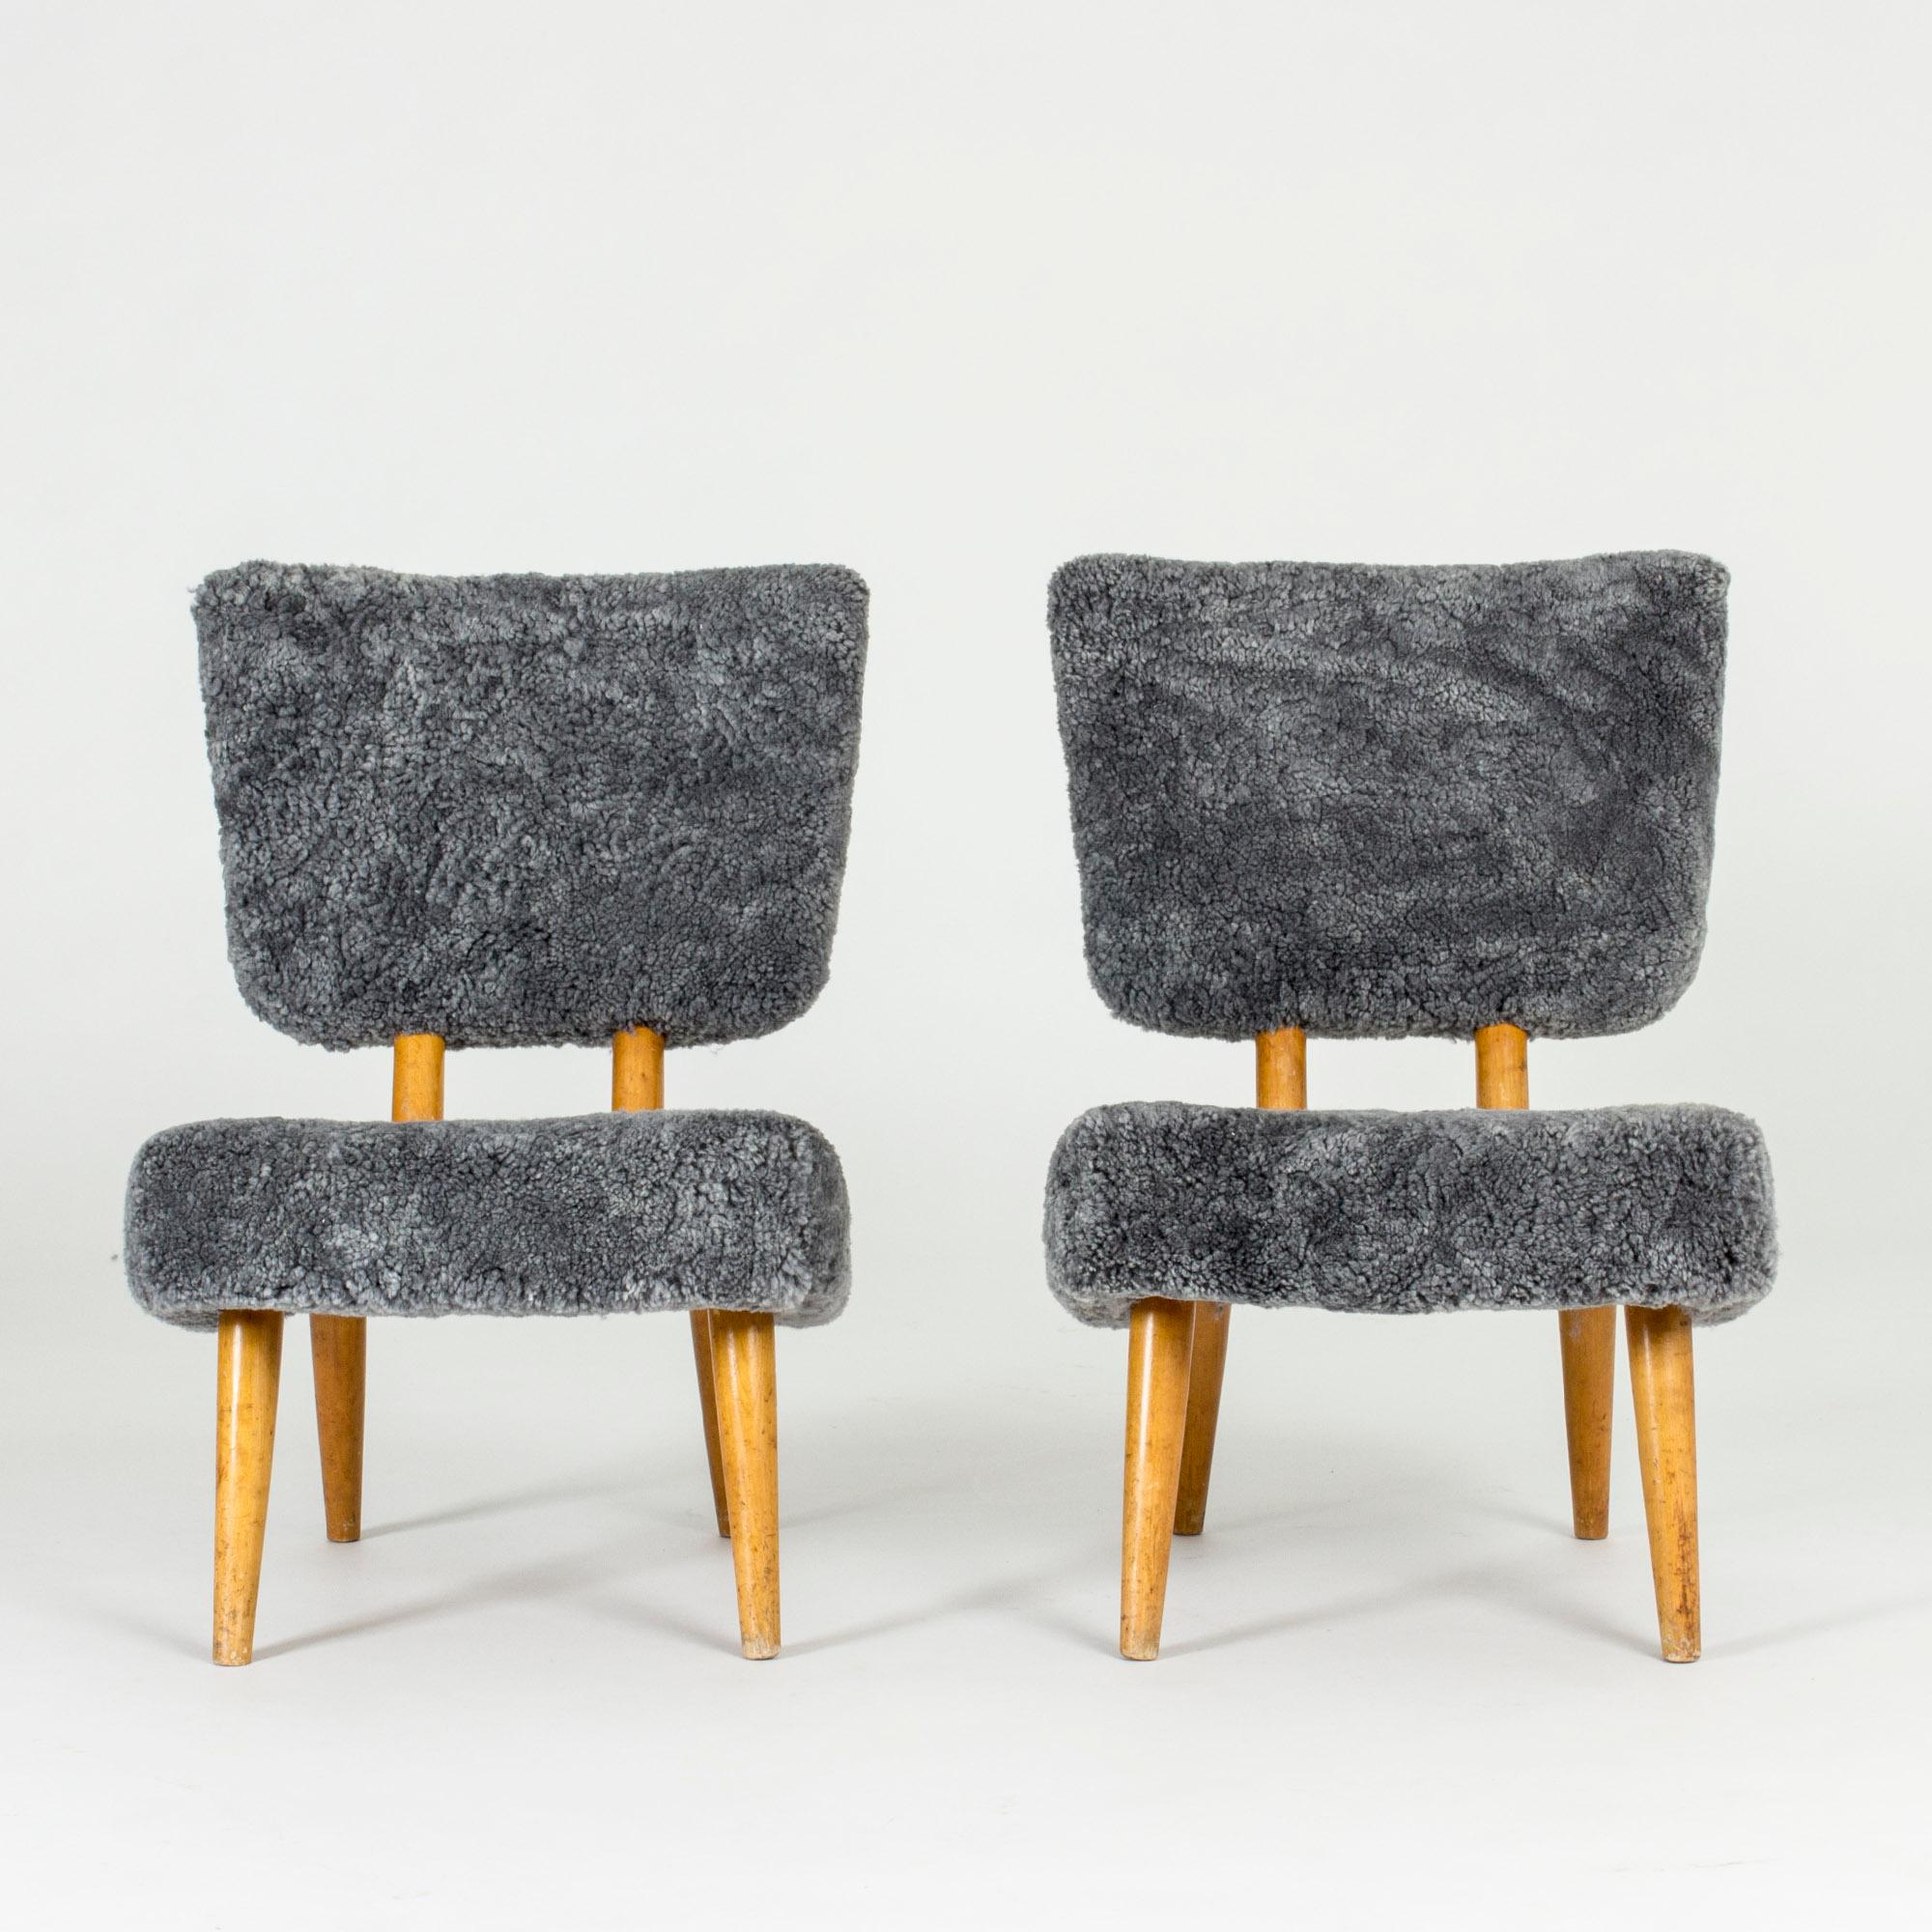 Zwei freche Sessel, hergestellt in Norwegen in den 1940er Jahren. Seltenes, gepflegtes Modell mit hohem Komfort und leichter Optik. Neu gepolstert mit Schafsleder.